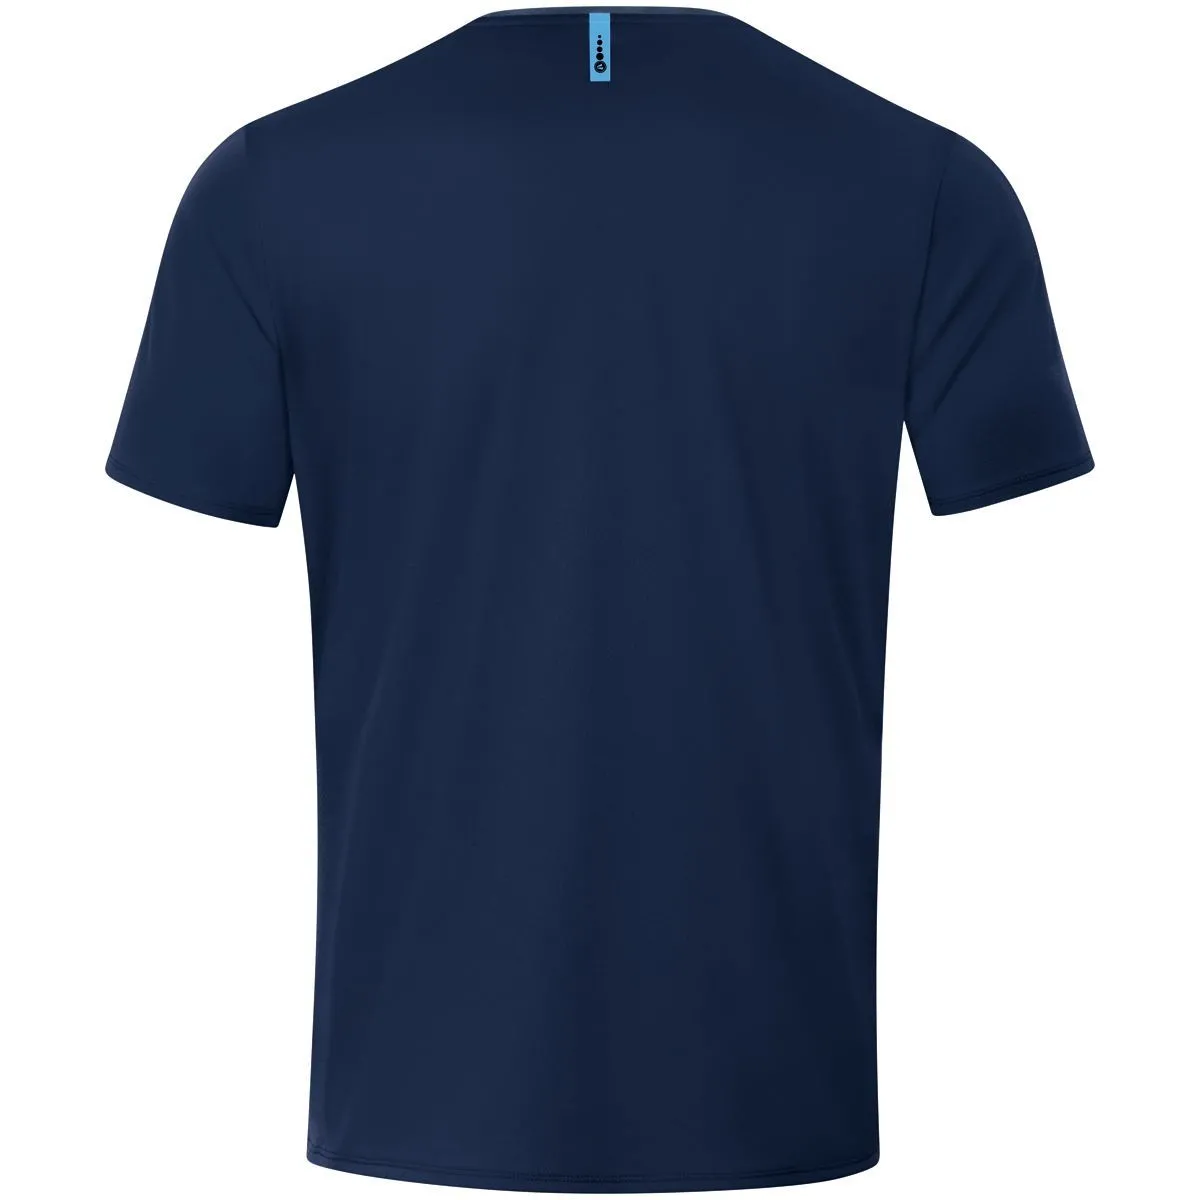 Jako T-Shirt Champ 2.0 dunkel blau für Damen, Herren und Kinder